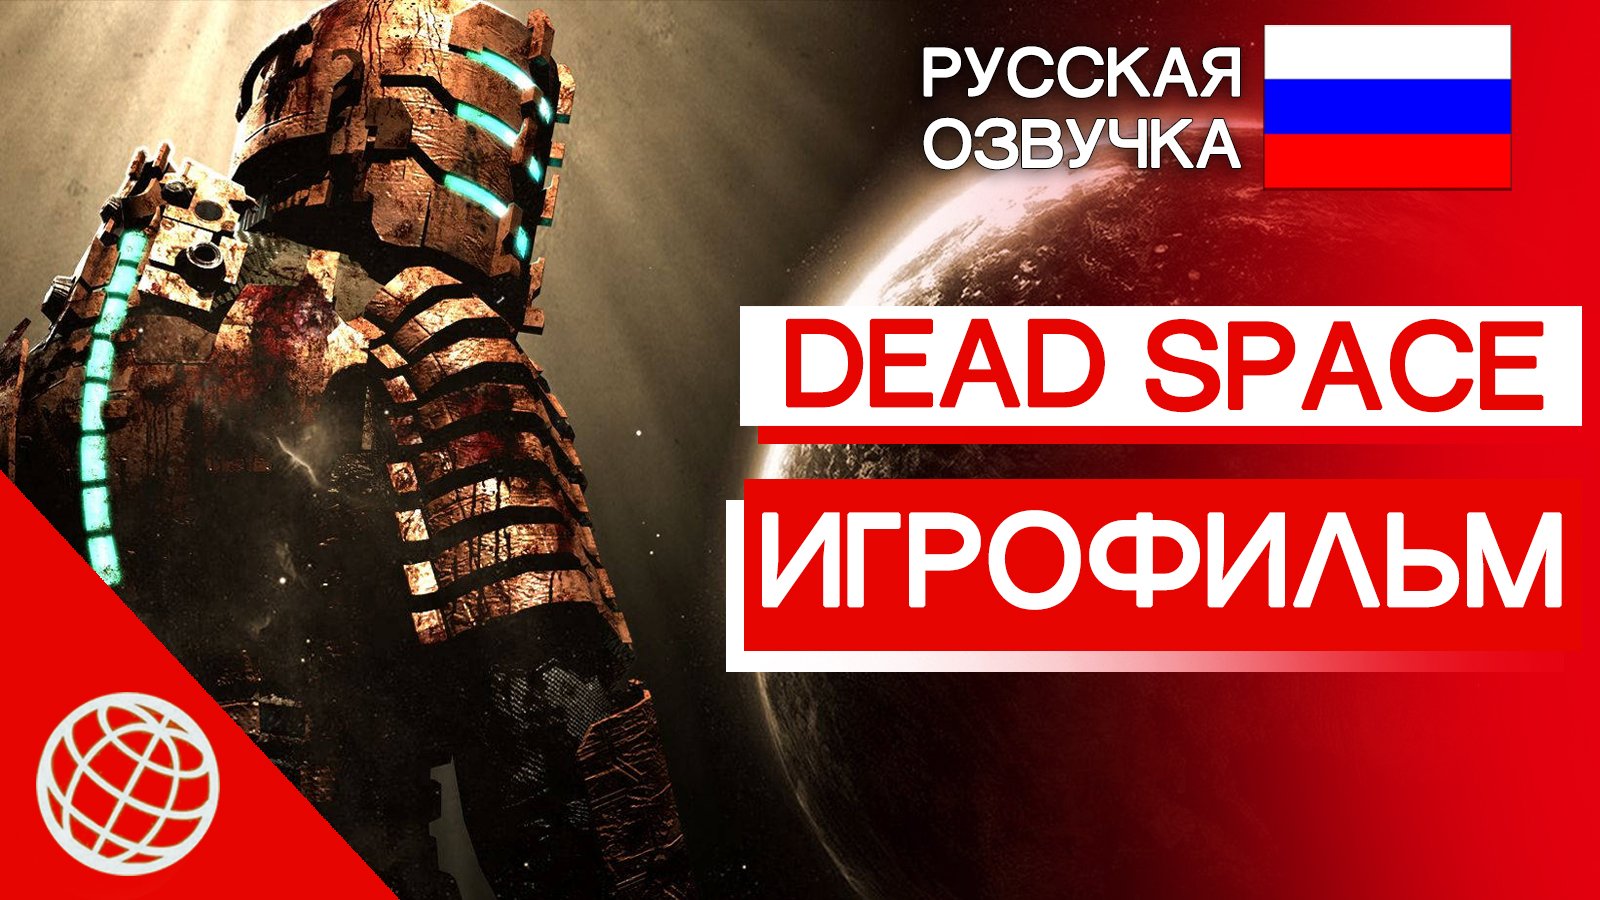 DEAD SPACE ИГРОФИЛЬМ РУССКАЯ ОЗВУЧКА ➤ Dead Space 2008 весь сюжет и катсцены на русском